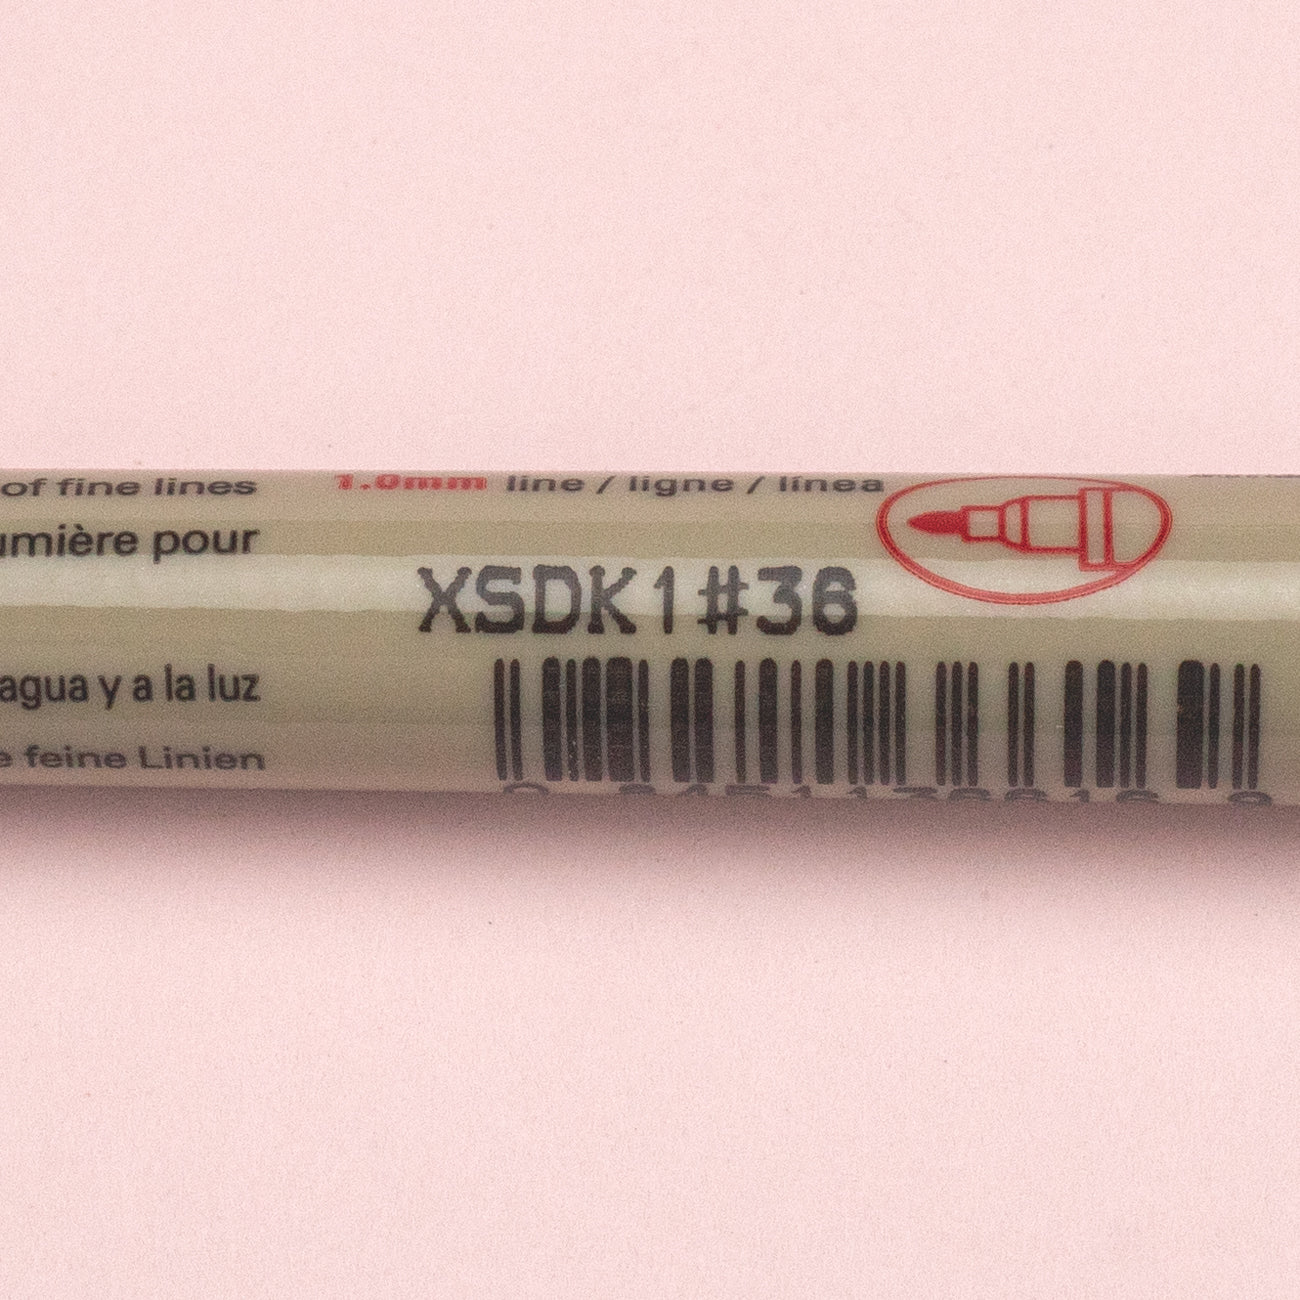 XSDK01-36 Sakura MICRON 01 PEN 0.25MM - BLUE